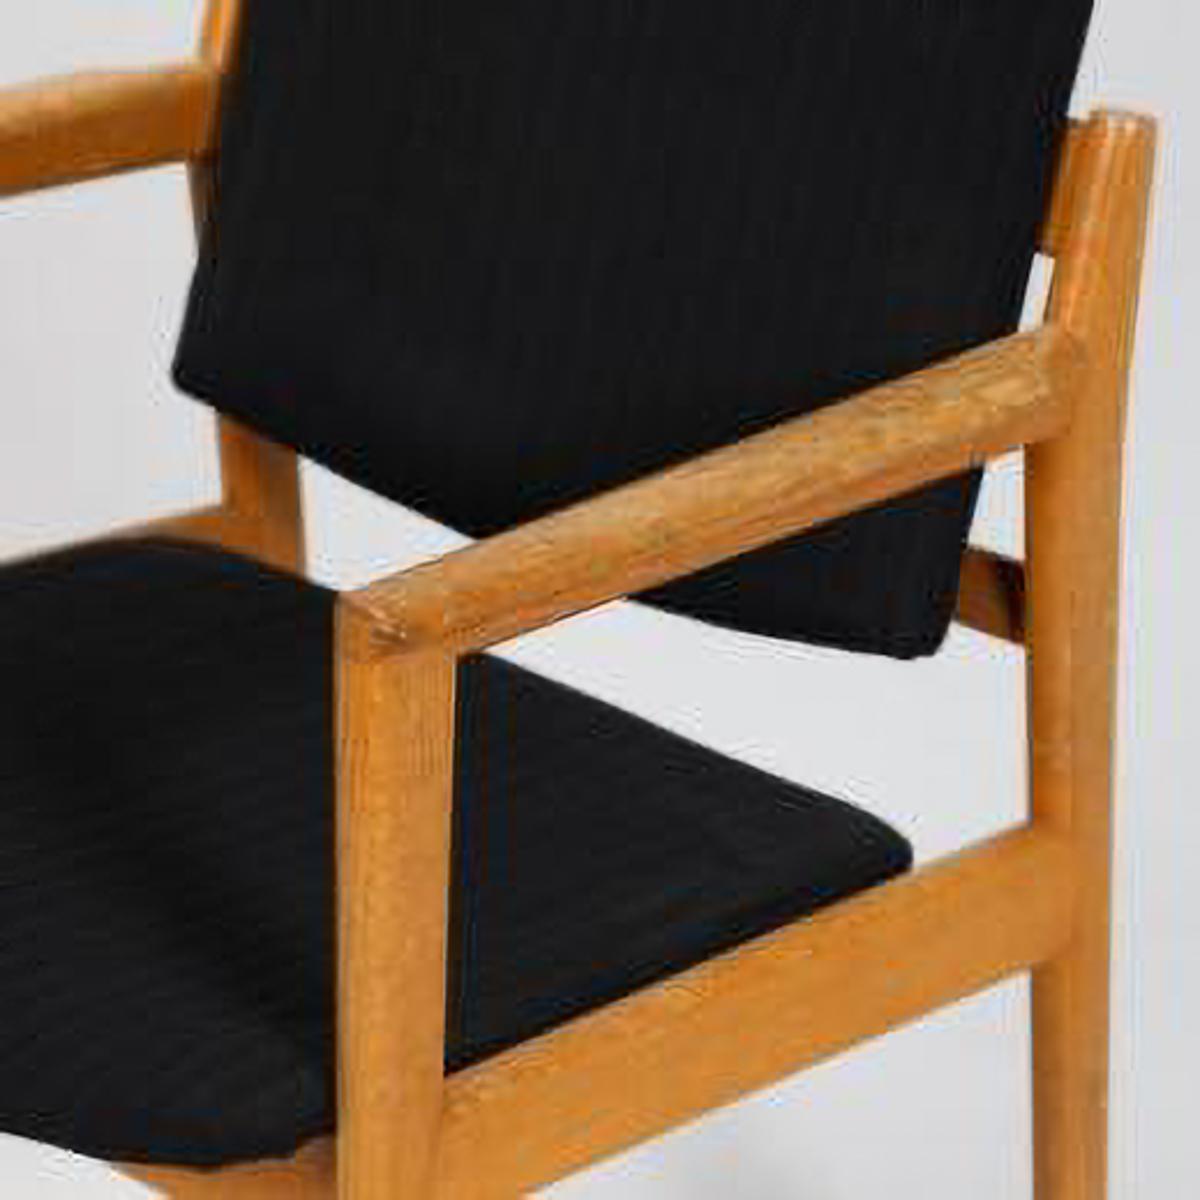 fauteuils 1960s Mid-Century Modern de Cassina,
Il est très confortable et donne du style et de la décoration à tout type d'environnement et de pièce... salon, chambre d'étude, hall et autres.
Le fauteuil a un tissu noir, mais vous pouvez le